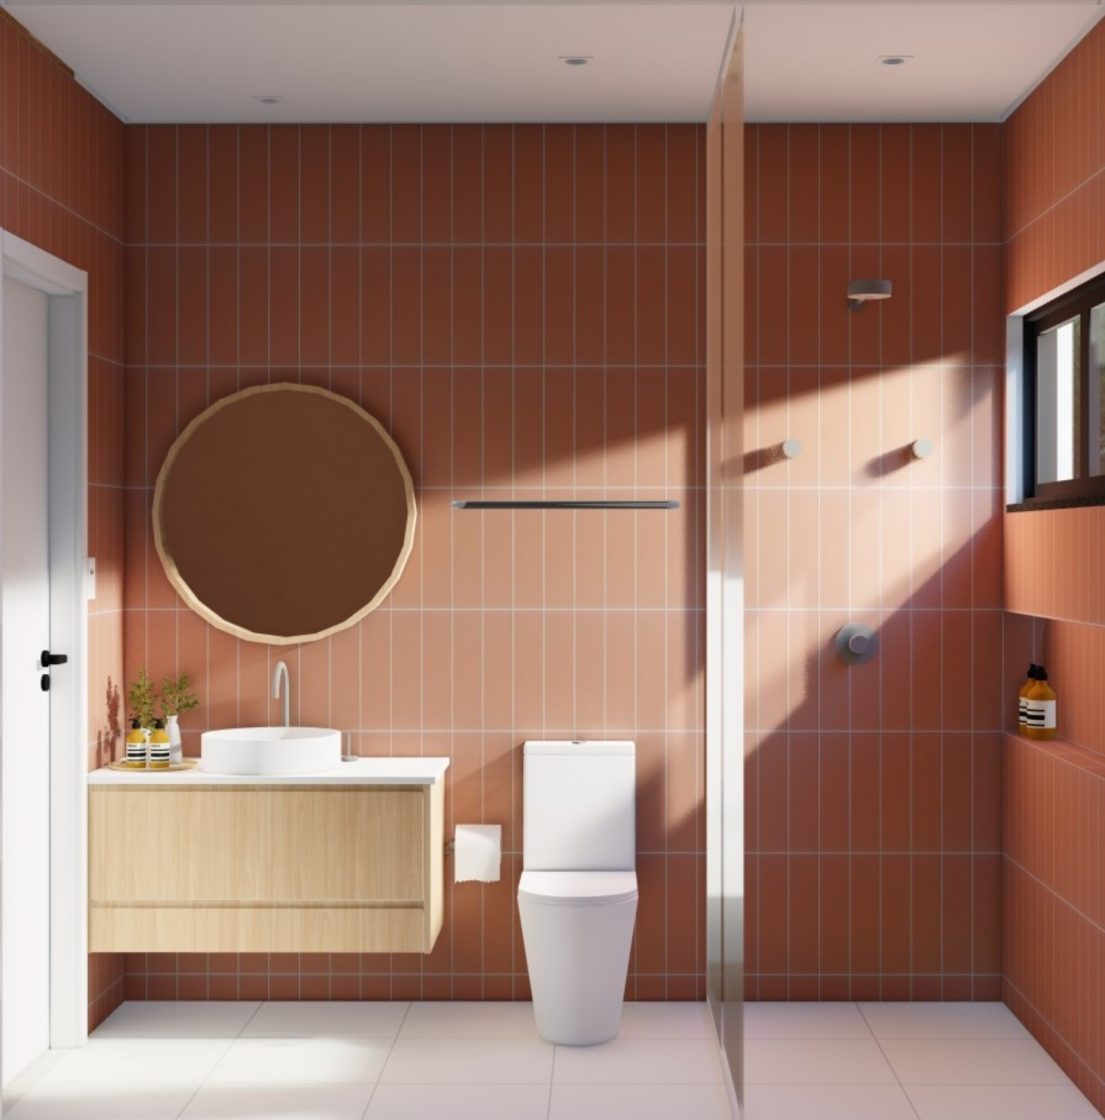 banheiro revestido com cerâmica com parede marrom